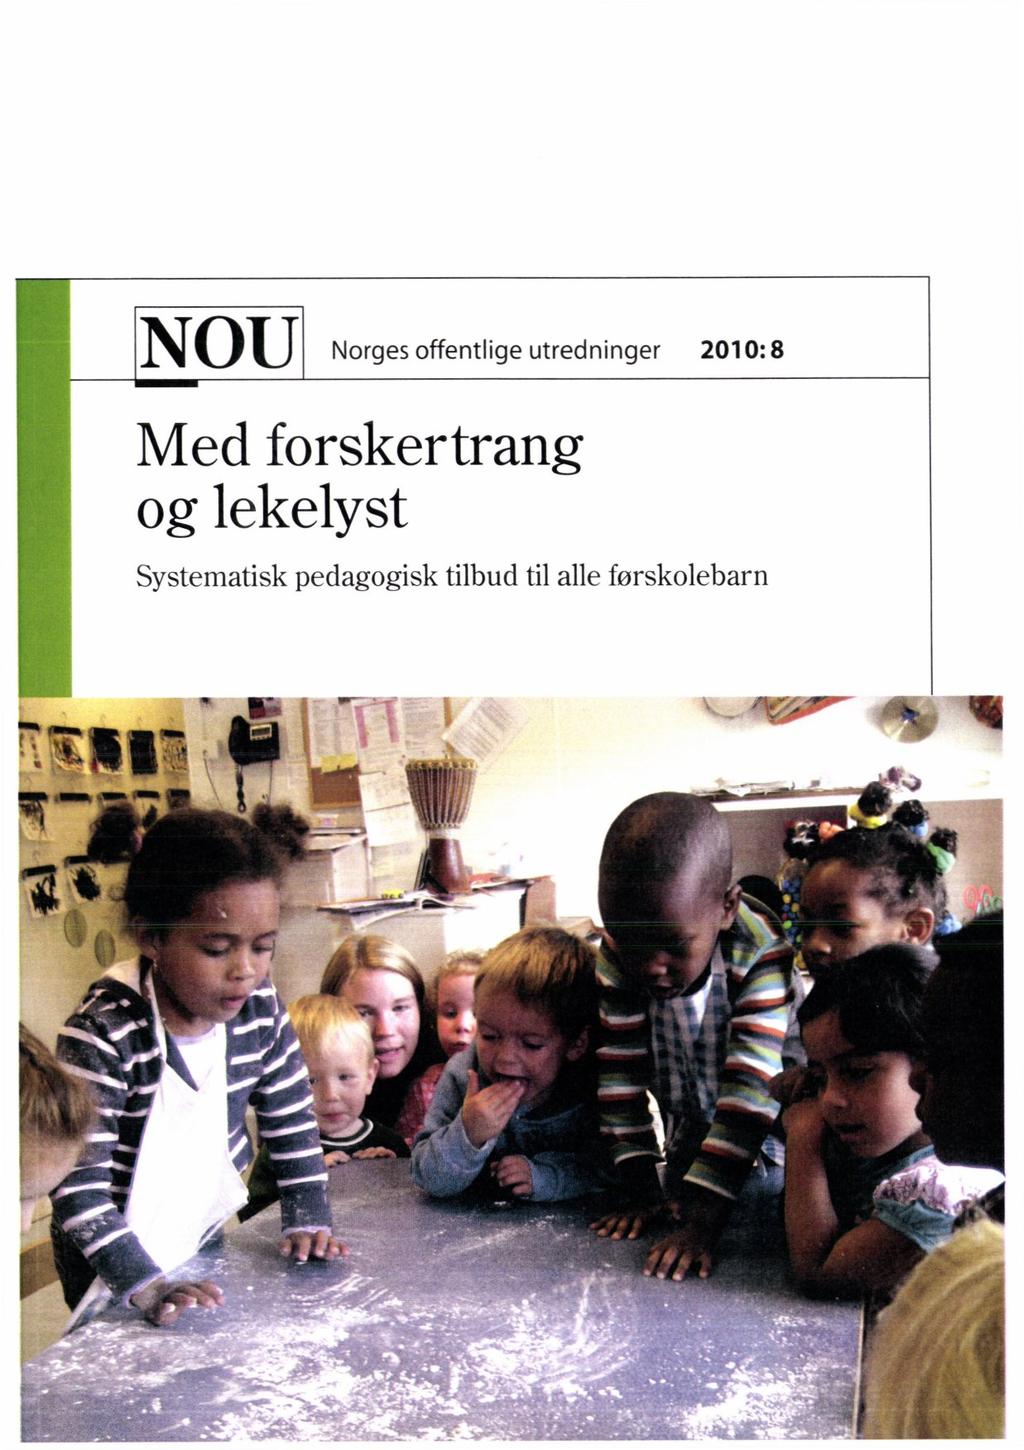 NOU Norges offentlige utredninger 2010: 8 Med forskertrang